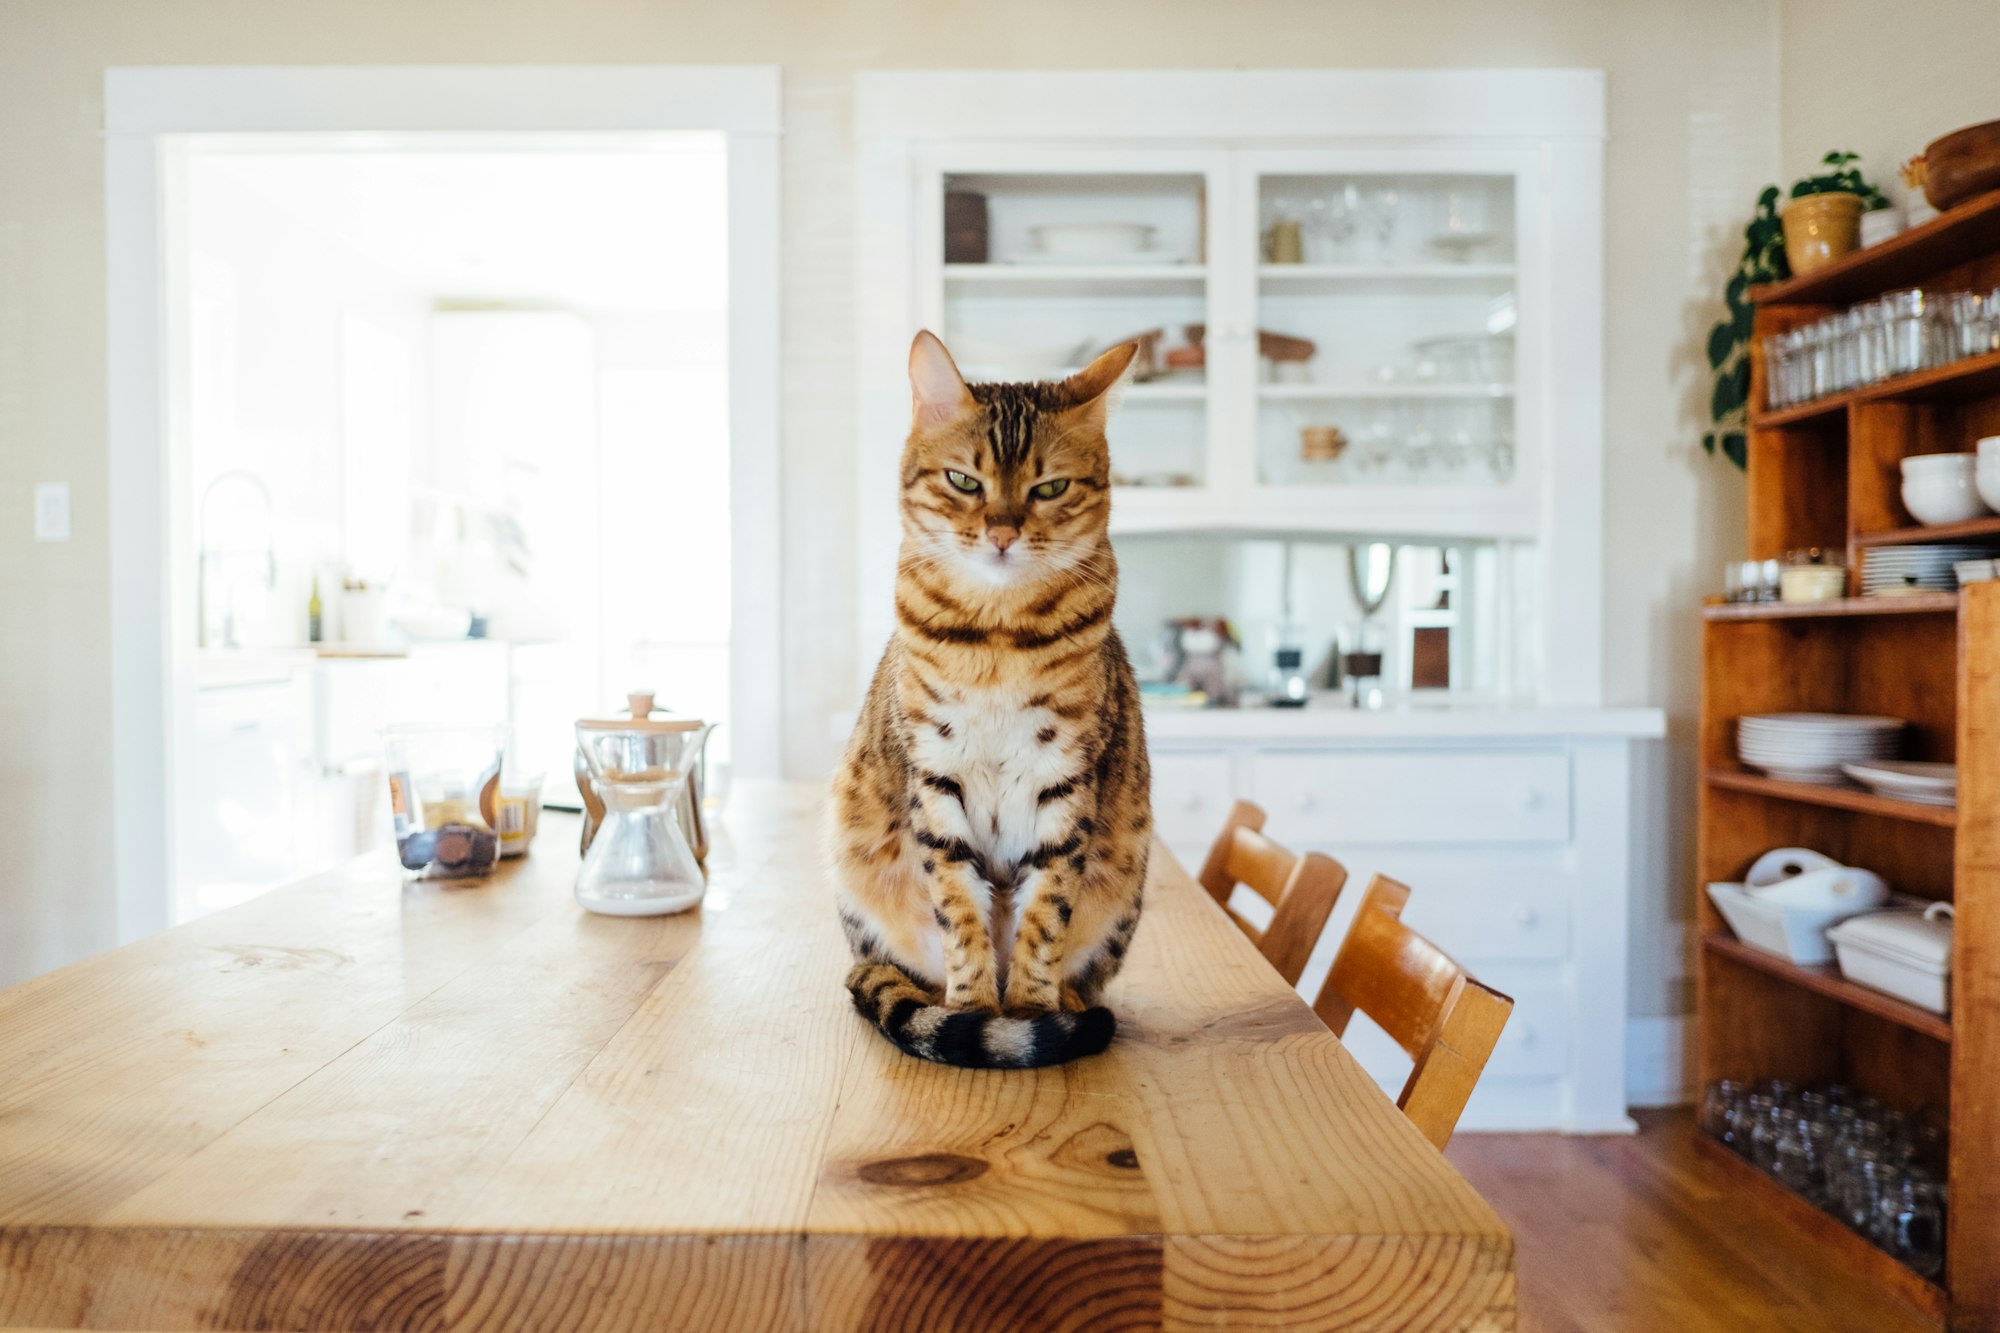 Striped cat in modern home